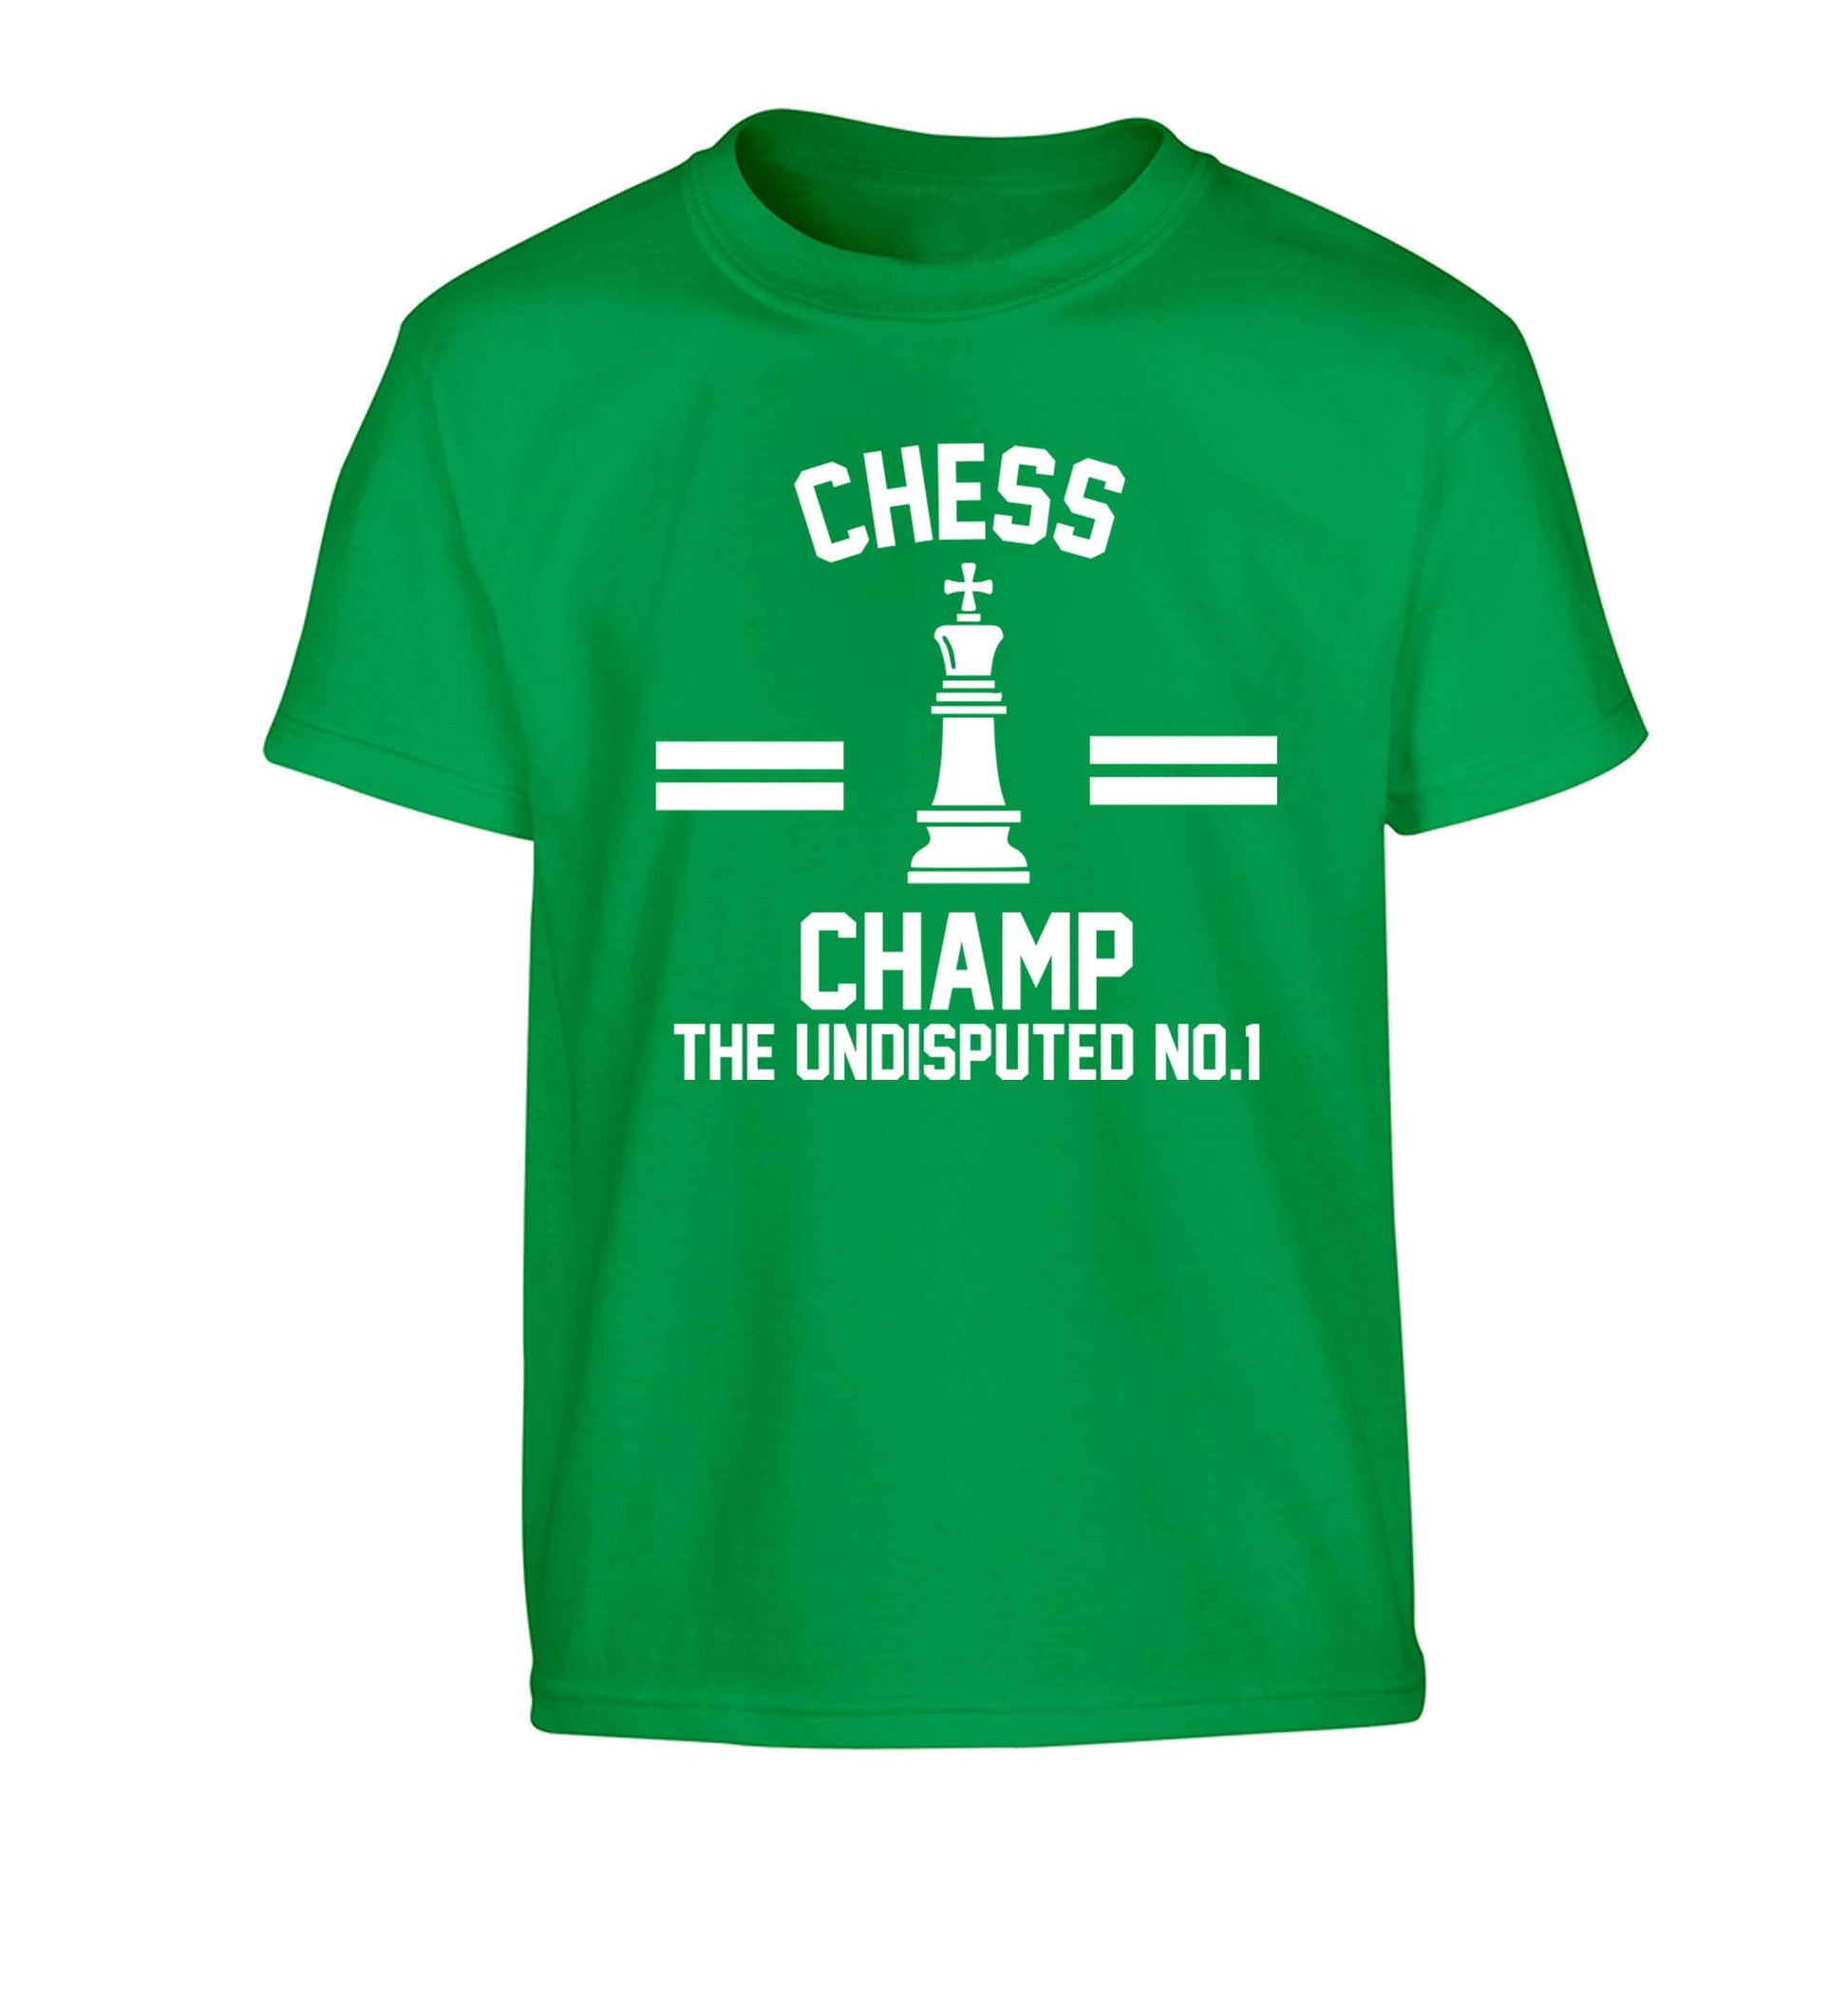 Undisputed chess championship no.1  Children's green Tshirt 12-13 Years